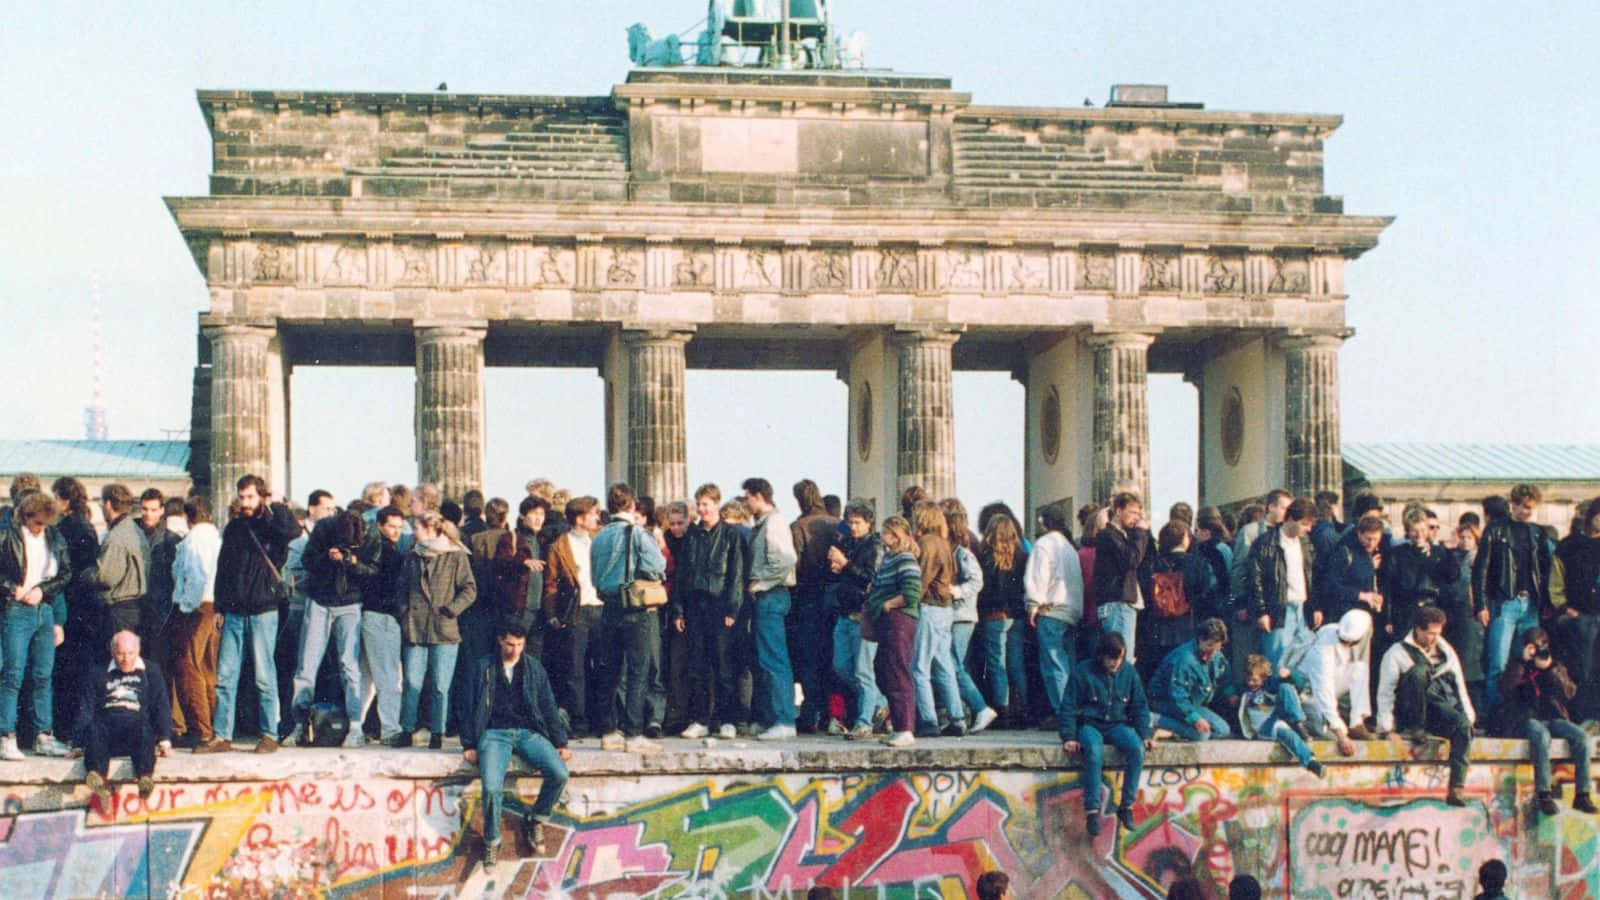 1989 Democratic Revolution In Berlin Wall Picture